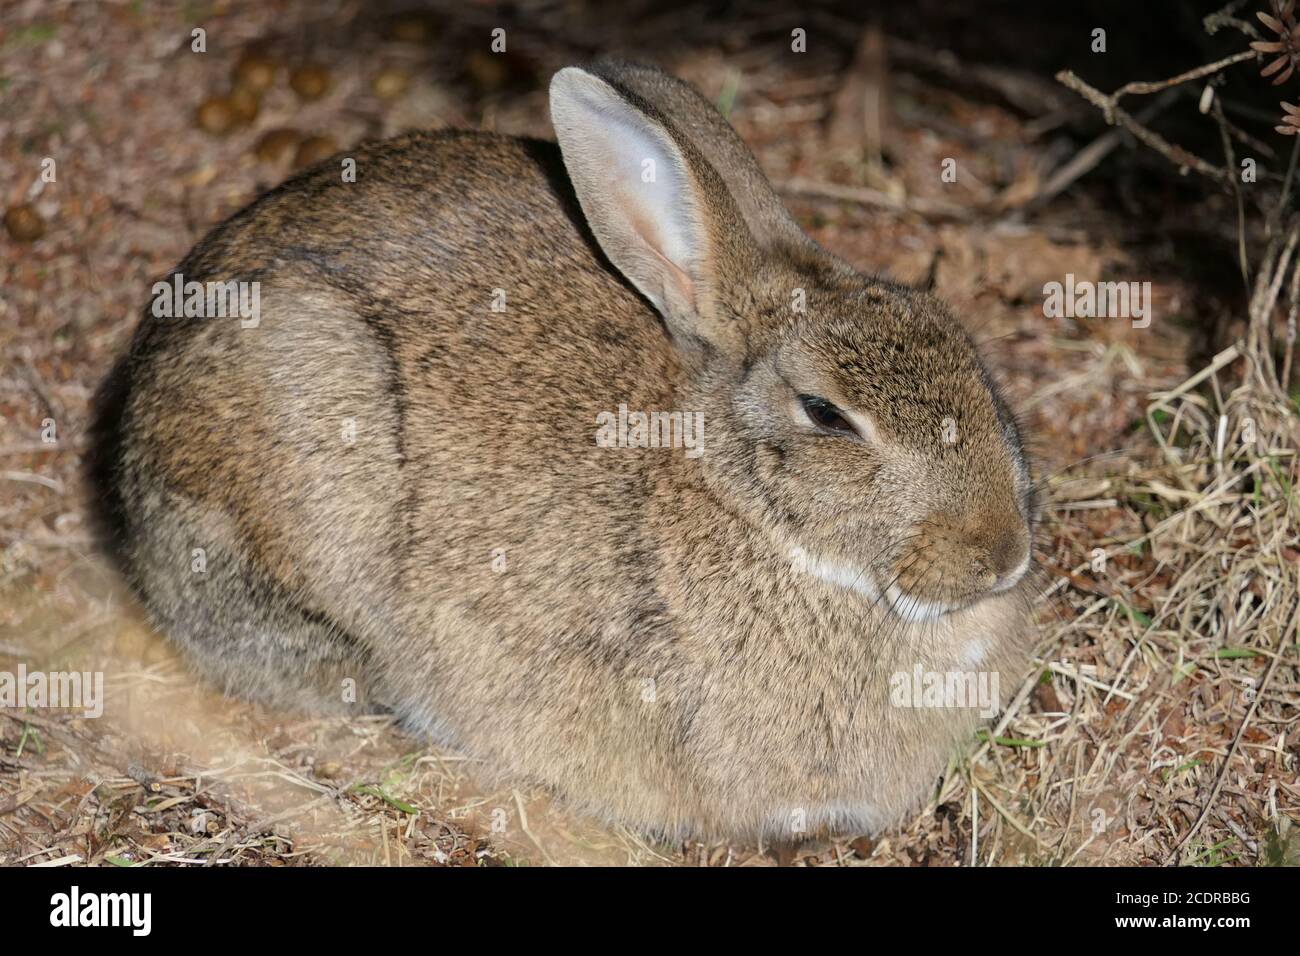 Closeup niedlich flauschig schluchzende braune Hase, Kaninchen oder lepus europaeus sitzen auf dem Waldboden Stockfoto